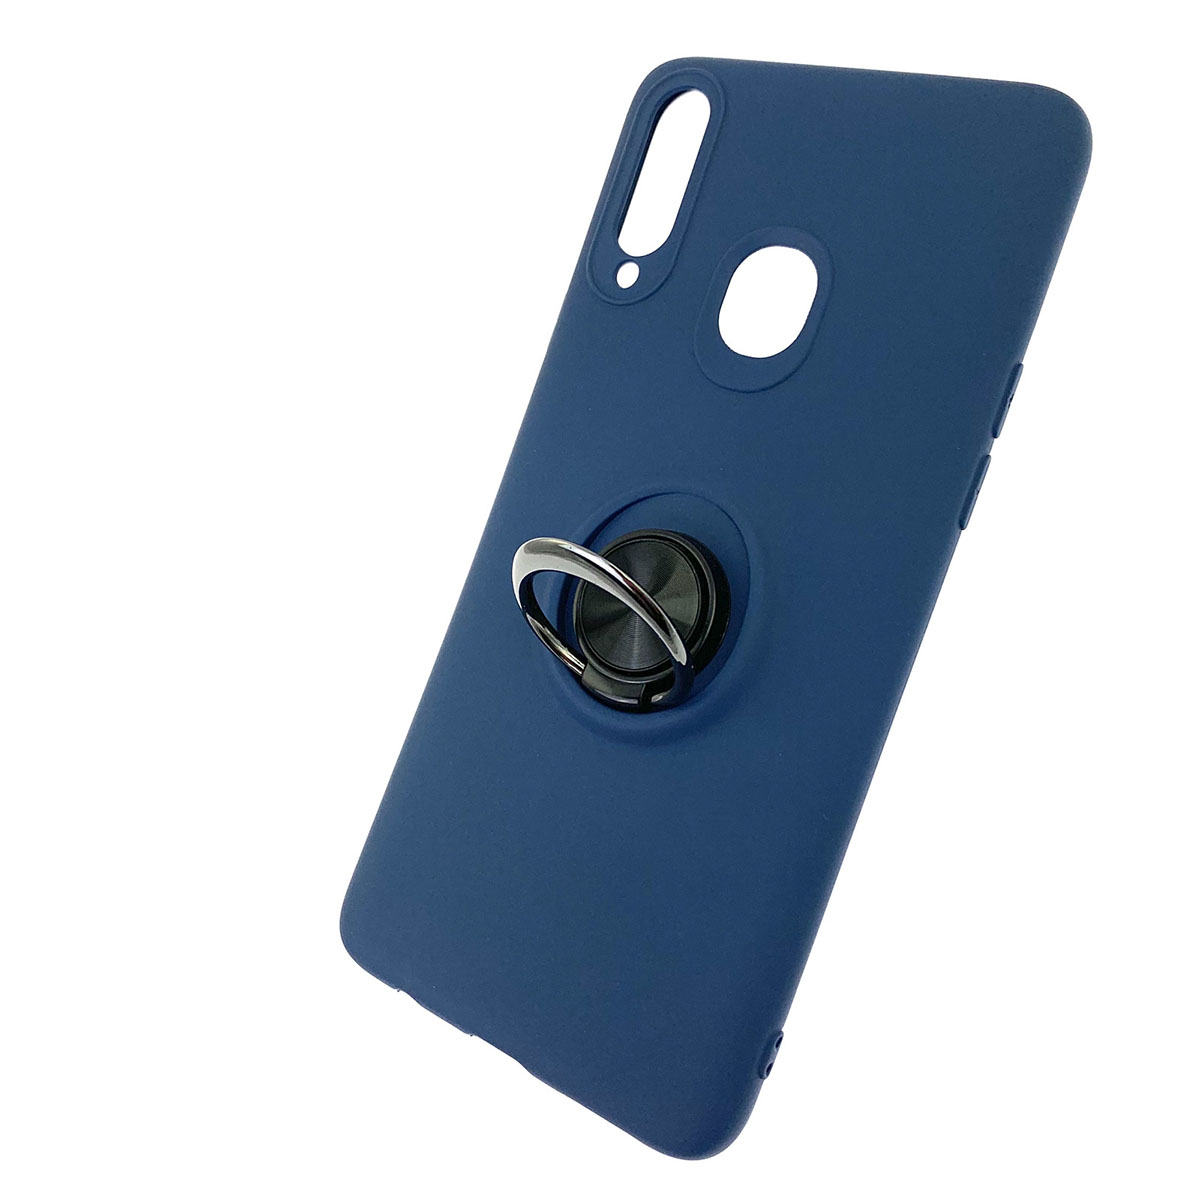 Чехол накладка для SAMSUNG Galaxy A20s (SM-A207), силикон, кольцо держатель, спиннер, цвет темно синий.